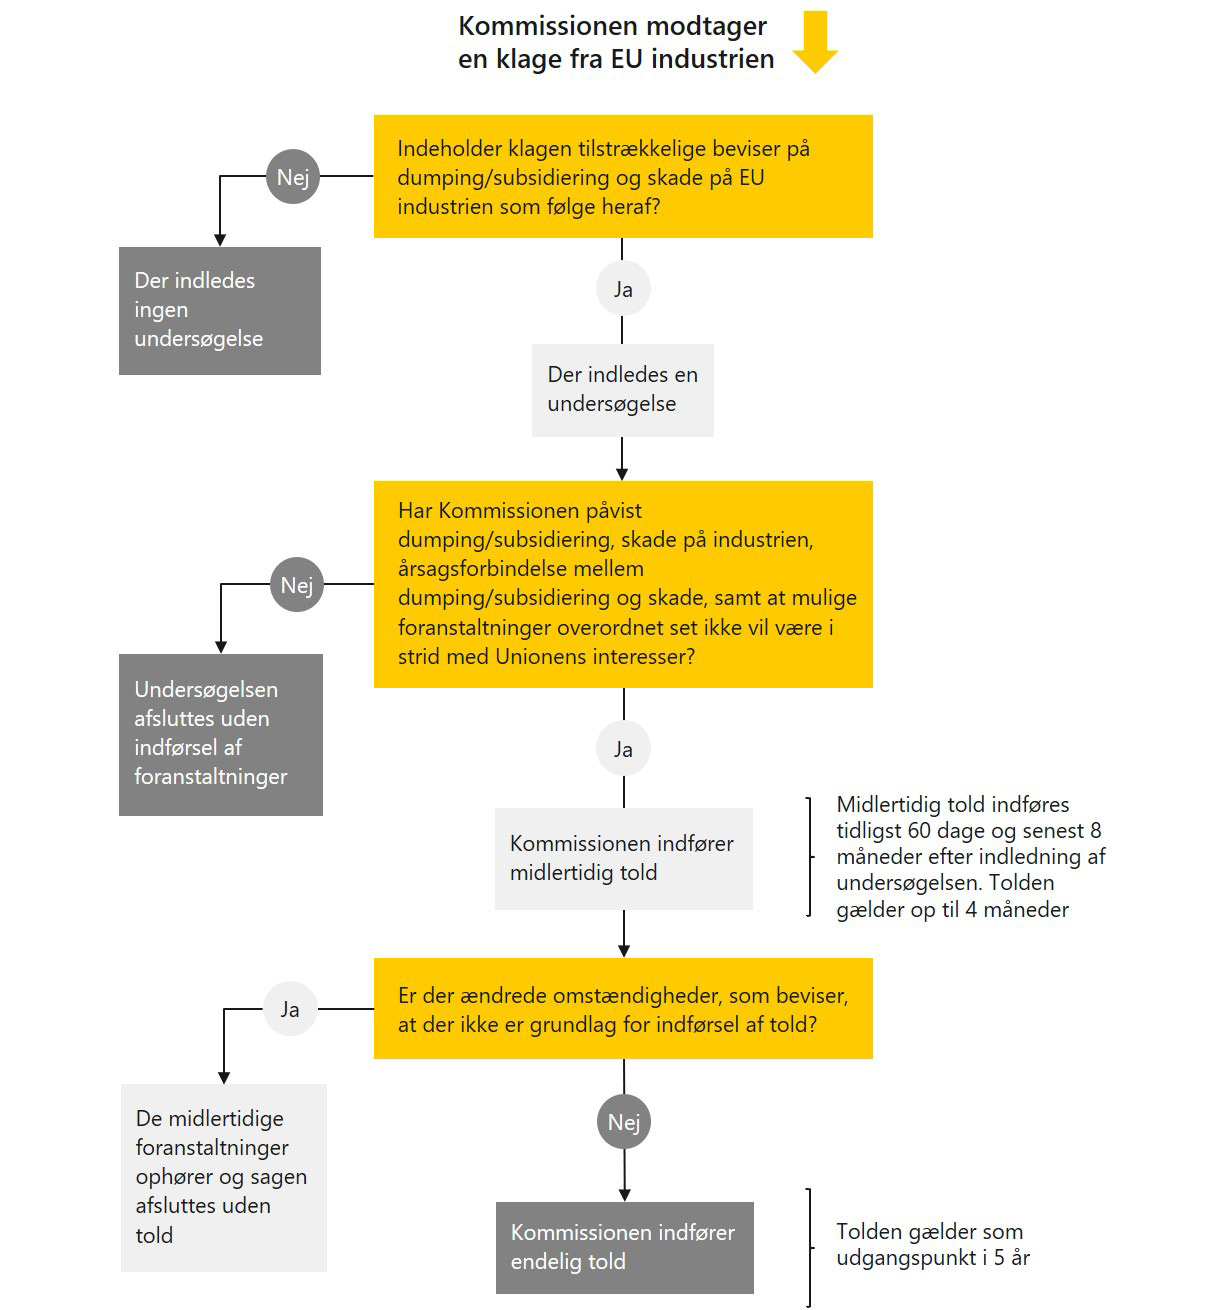 Diagram viser en quickguide til Kommissionens proces for håndteringen af en konkret klage om mulig dumping/subsidiering på det europæiske marked, fra modtagelse af klagen til en mulig indførsel af endelig told på det omfattede produkt.